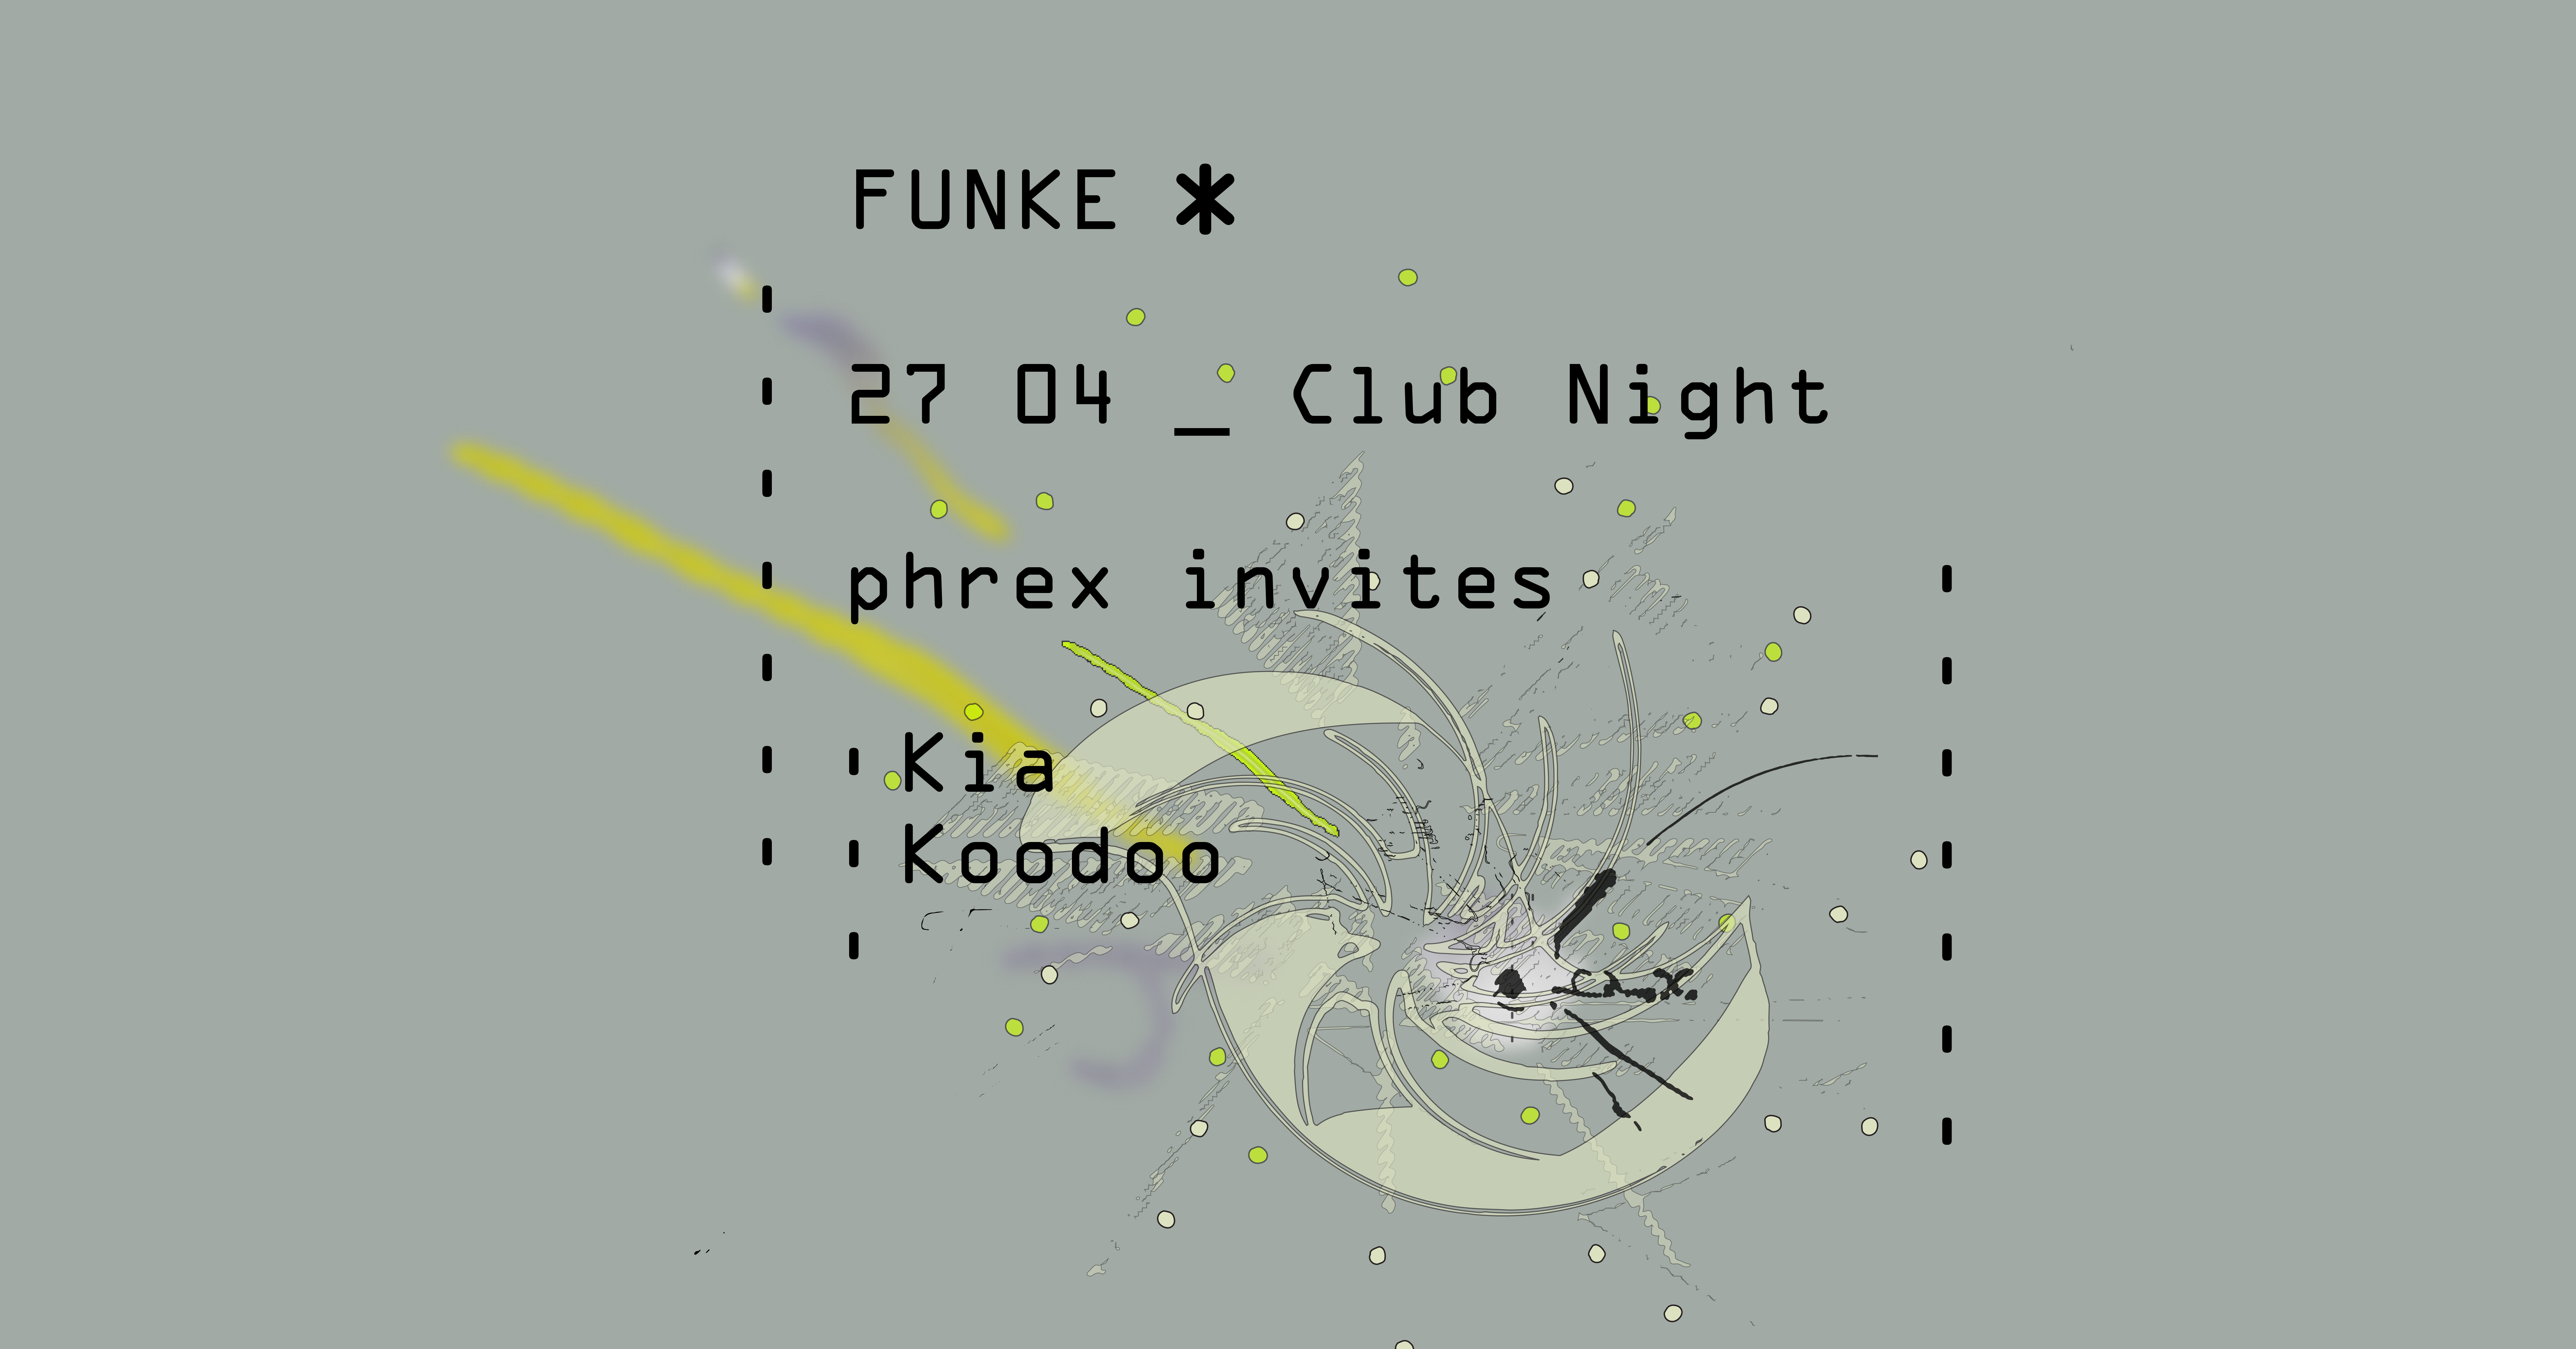 Funke_Phrex invites Kia, Koodoo - Página frontal